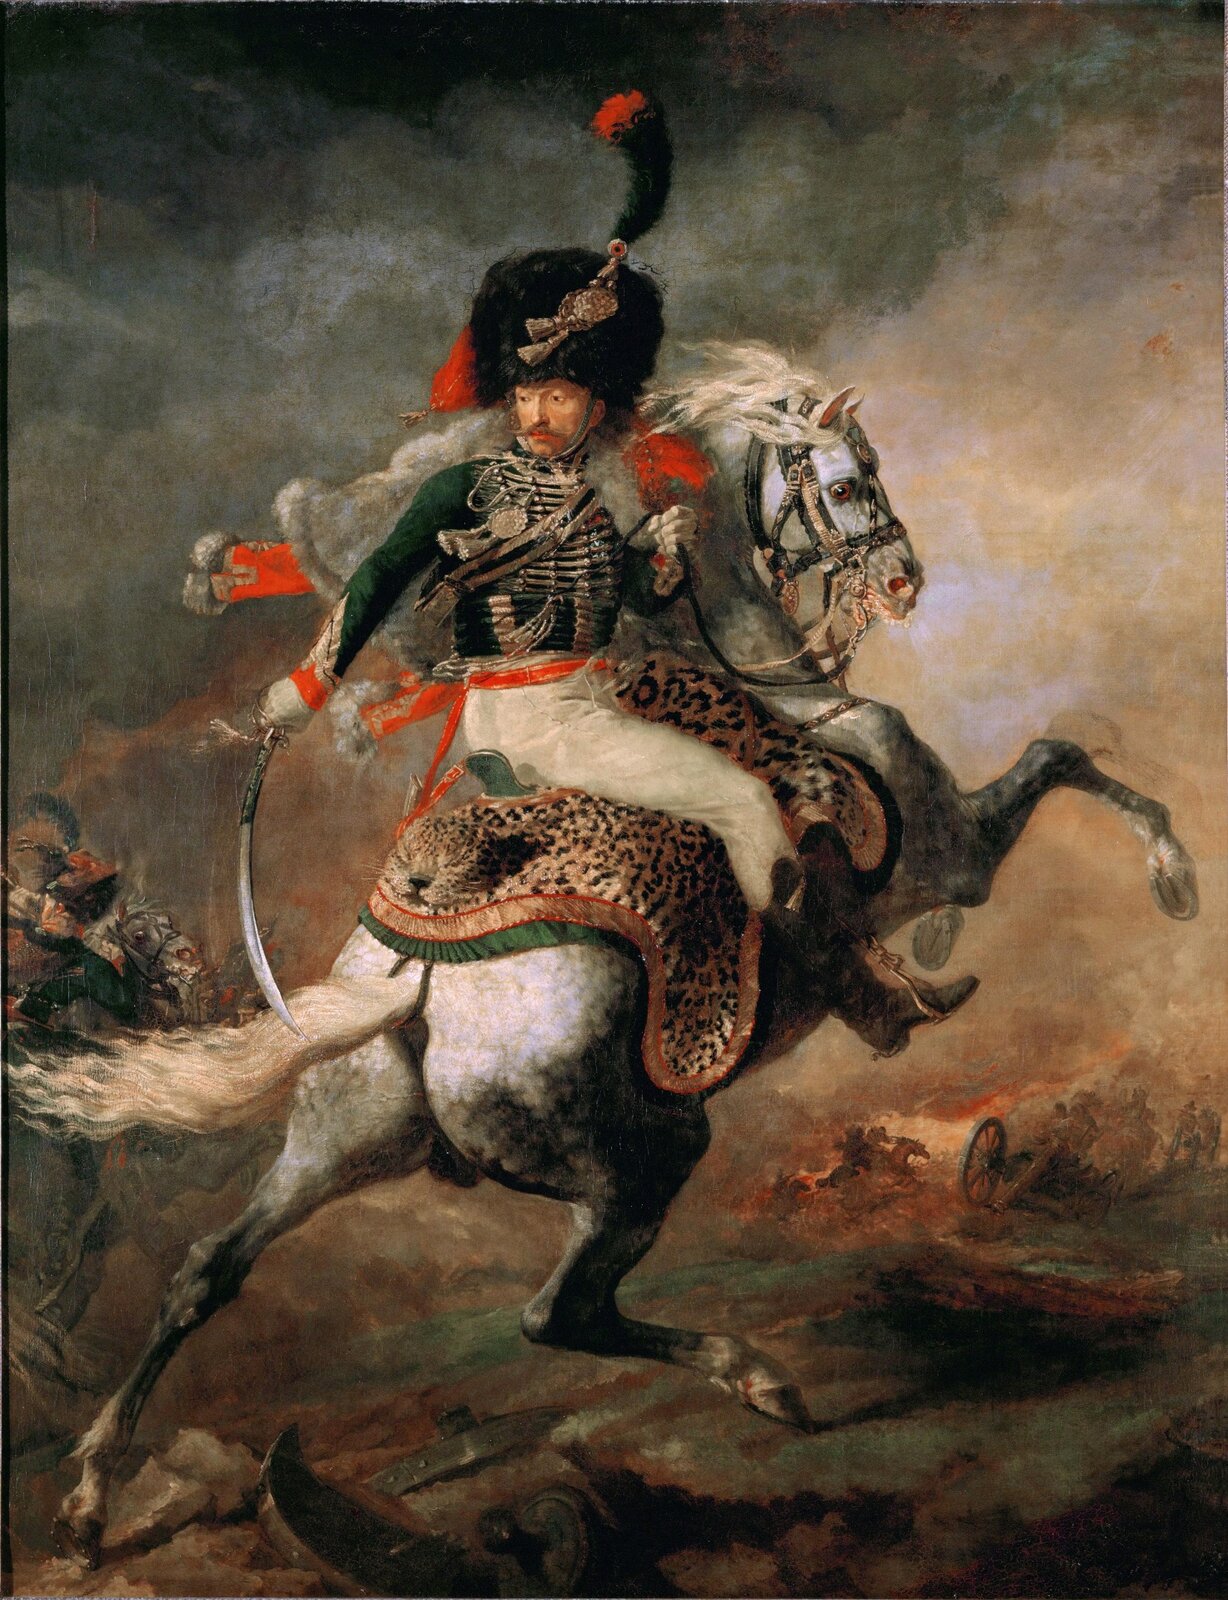 Ilustracja przedstawia obraz Théodore'a Géricault „Oficer szaserów”. Na obrazie ukazany jest żołnierz siedzący na białym koniu. Mężczyzna jest ubrany w zielono-biały mundur (zielona góra, białe spodnie). Na głowie ma dużą czarną czapę ozdobioną czarno-czerwonym piórem. W prawej ręce trzyma szablę, a w lewej lejce. Koń jest ukazany w ruchu, biegnący z dwoma przednimi nogami uniesionymi do góry.  W tle widać innych jeźdźców w trakcie walk. 